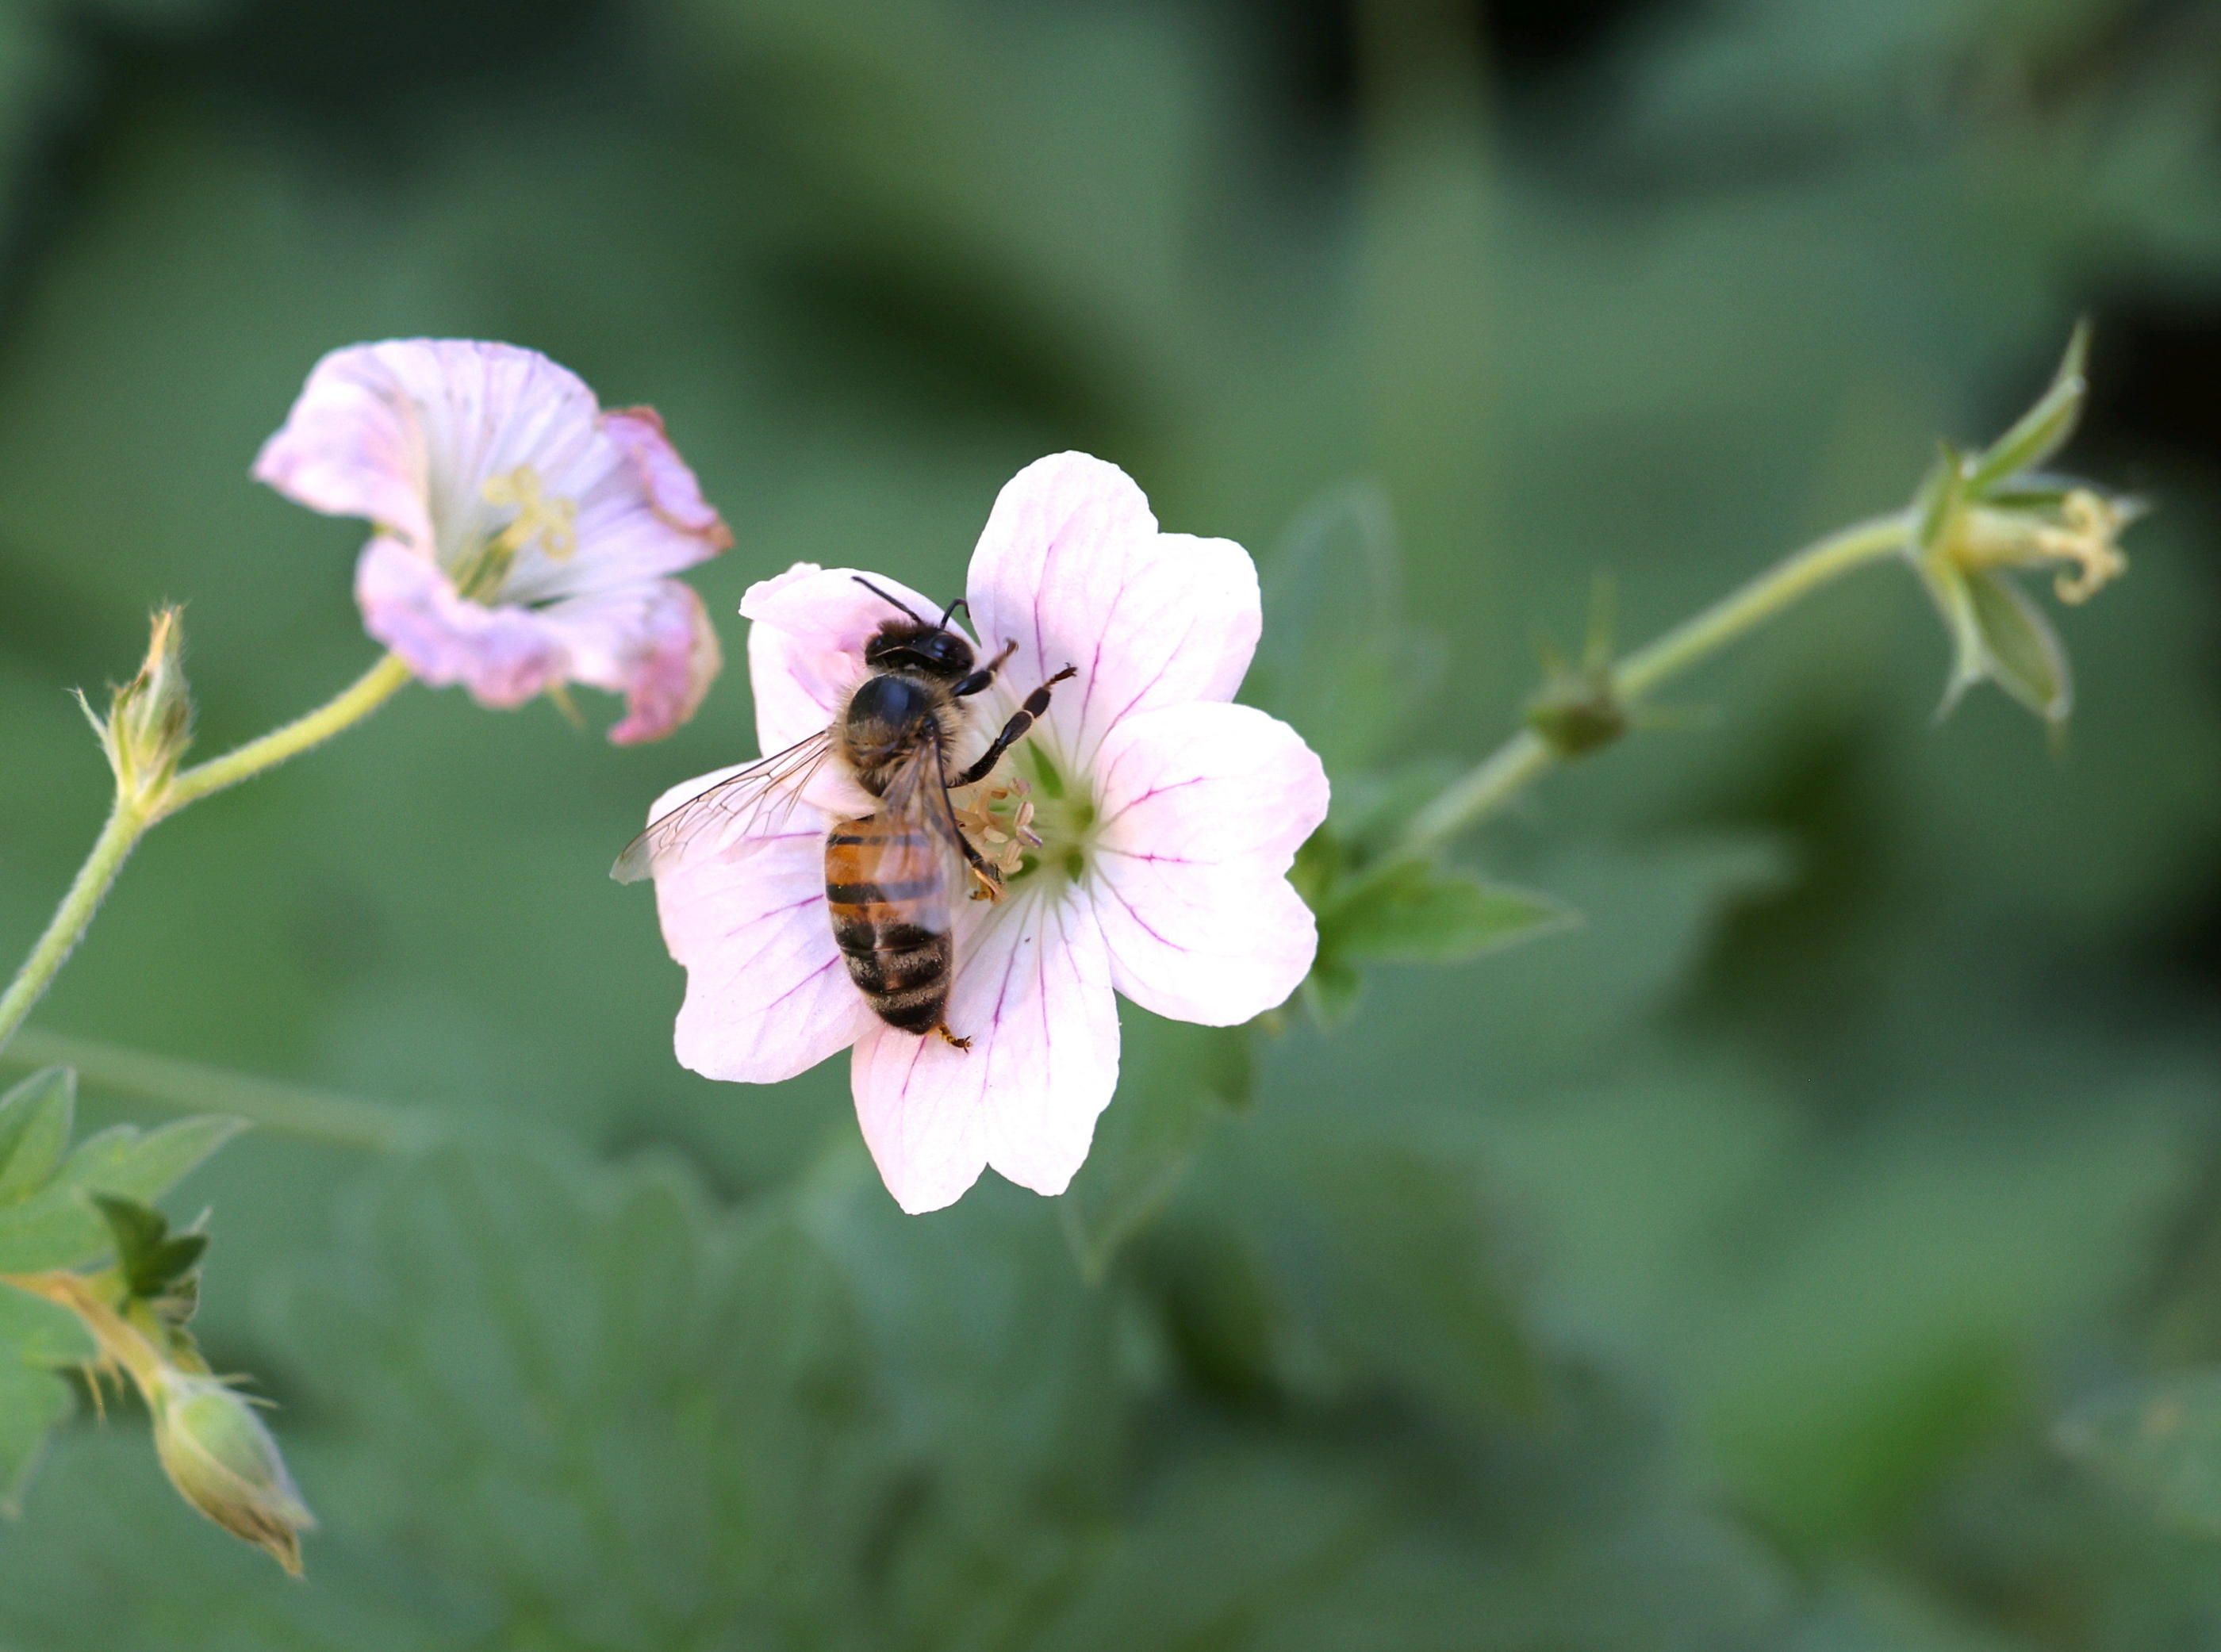 En Europe, les piqûres d'hyménoptères sont dues dans 20-25 % des cas à une abeille. (Illustration) LP/Delphine Goldsztejn